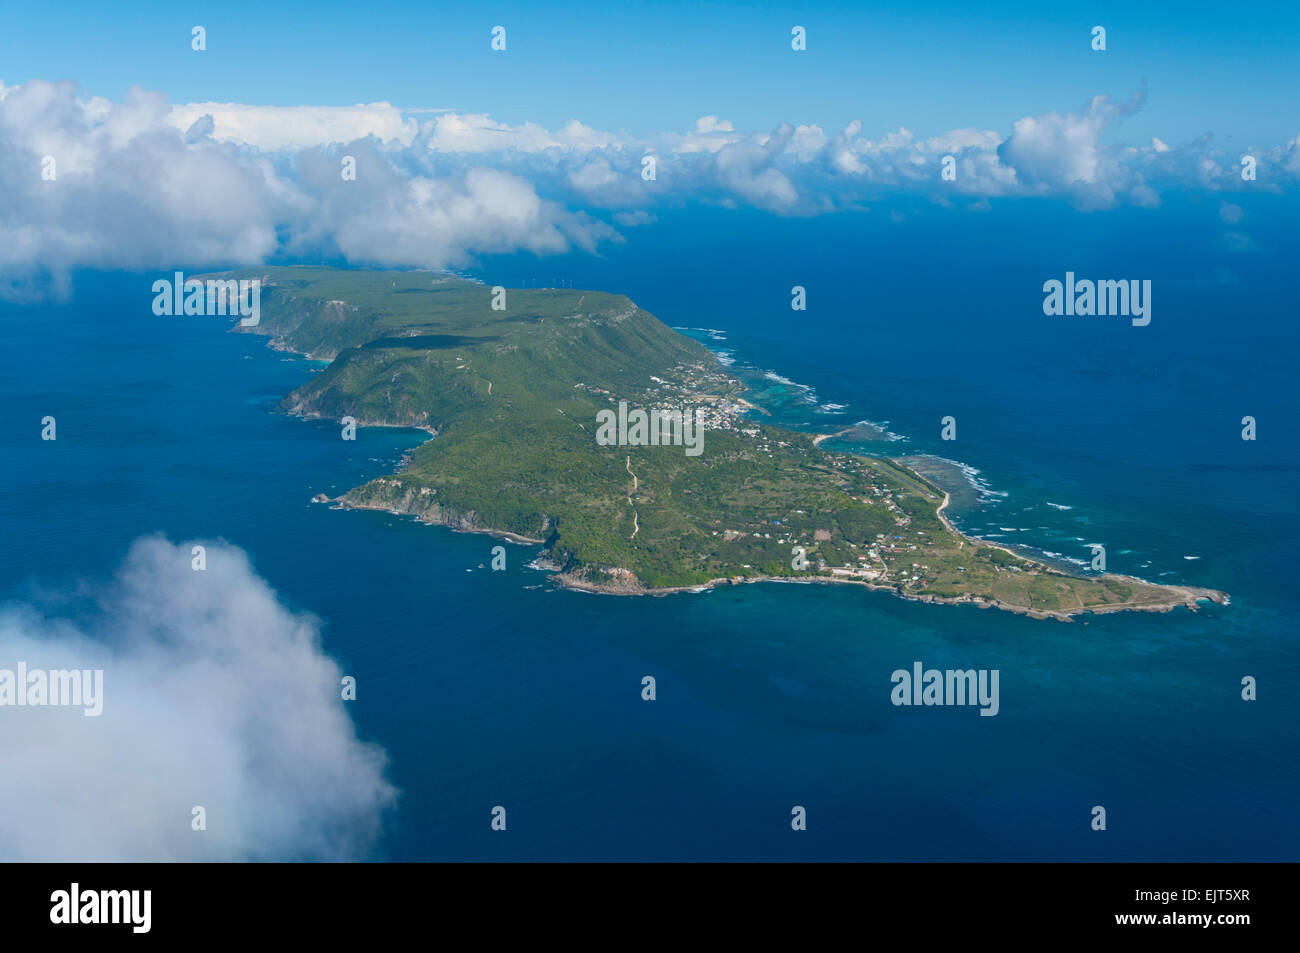 La Francia. La Guadalupa, la Desirade isola (vista aerea) // Guadalupa, Ile de la Desirade (vue aerienne) Foto Stock